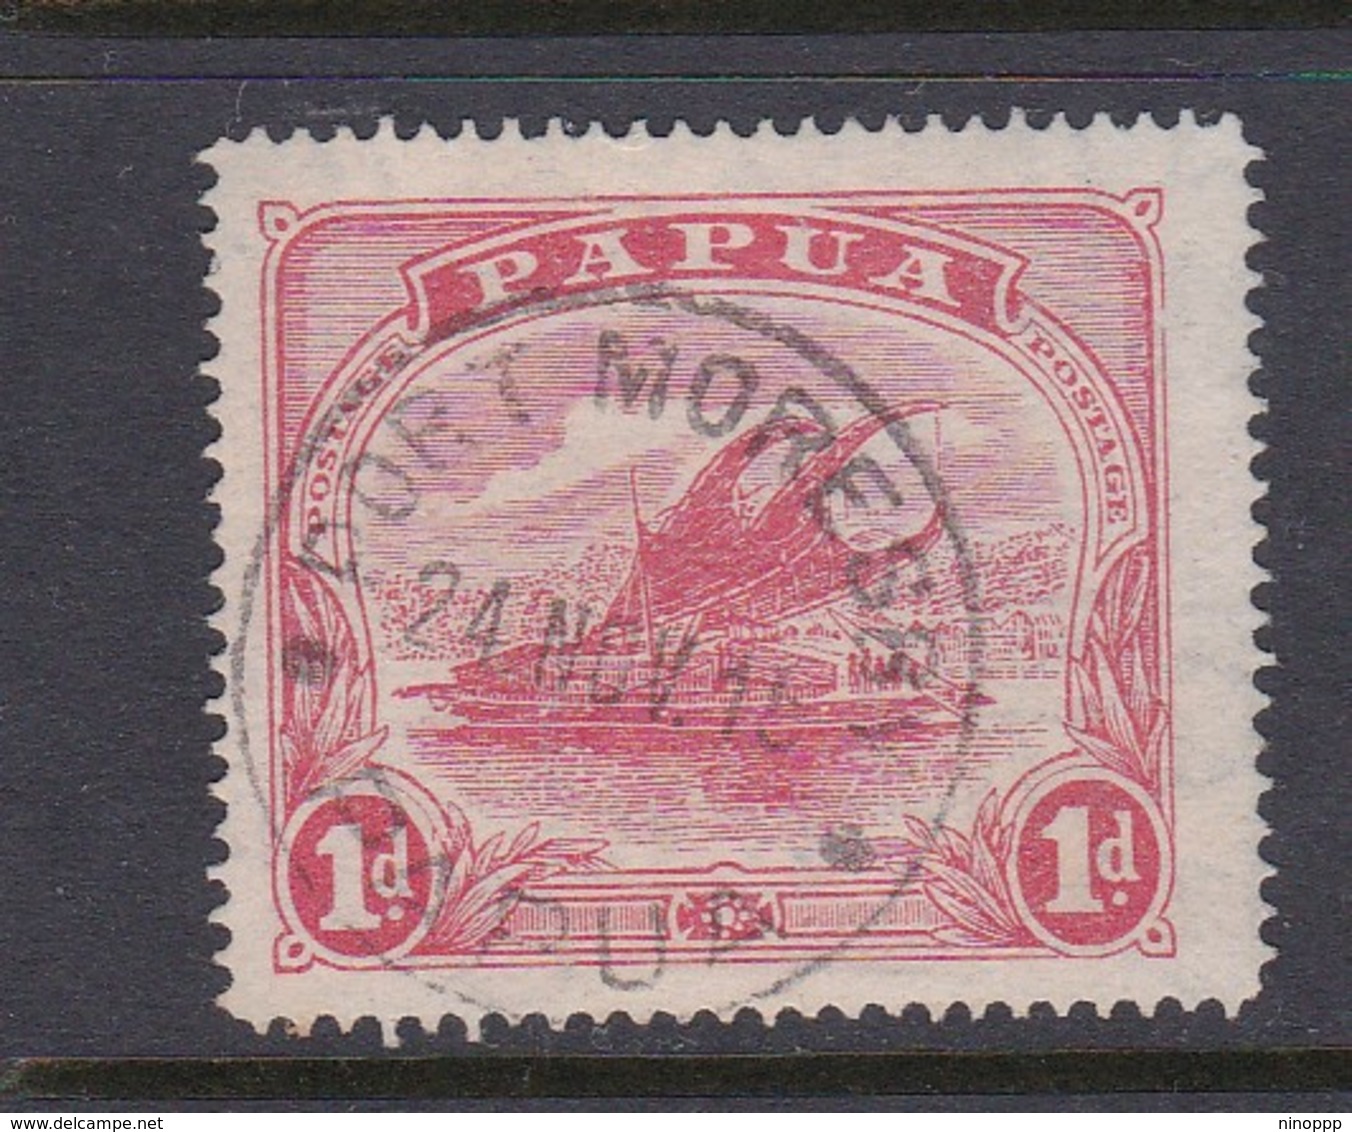 Papua SG 85 1911-15 Lakatoi One Penny Rose-pink Used - Papua New Guinea